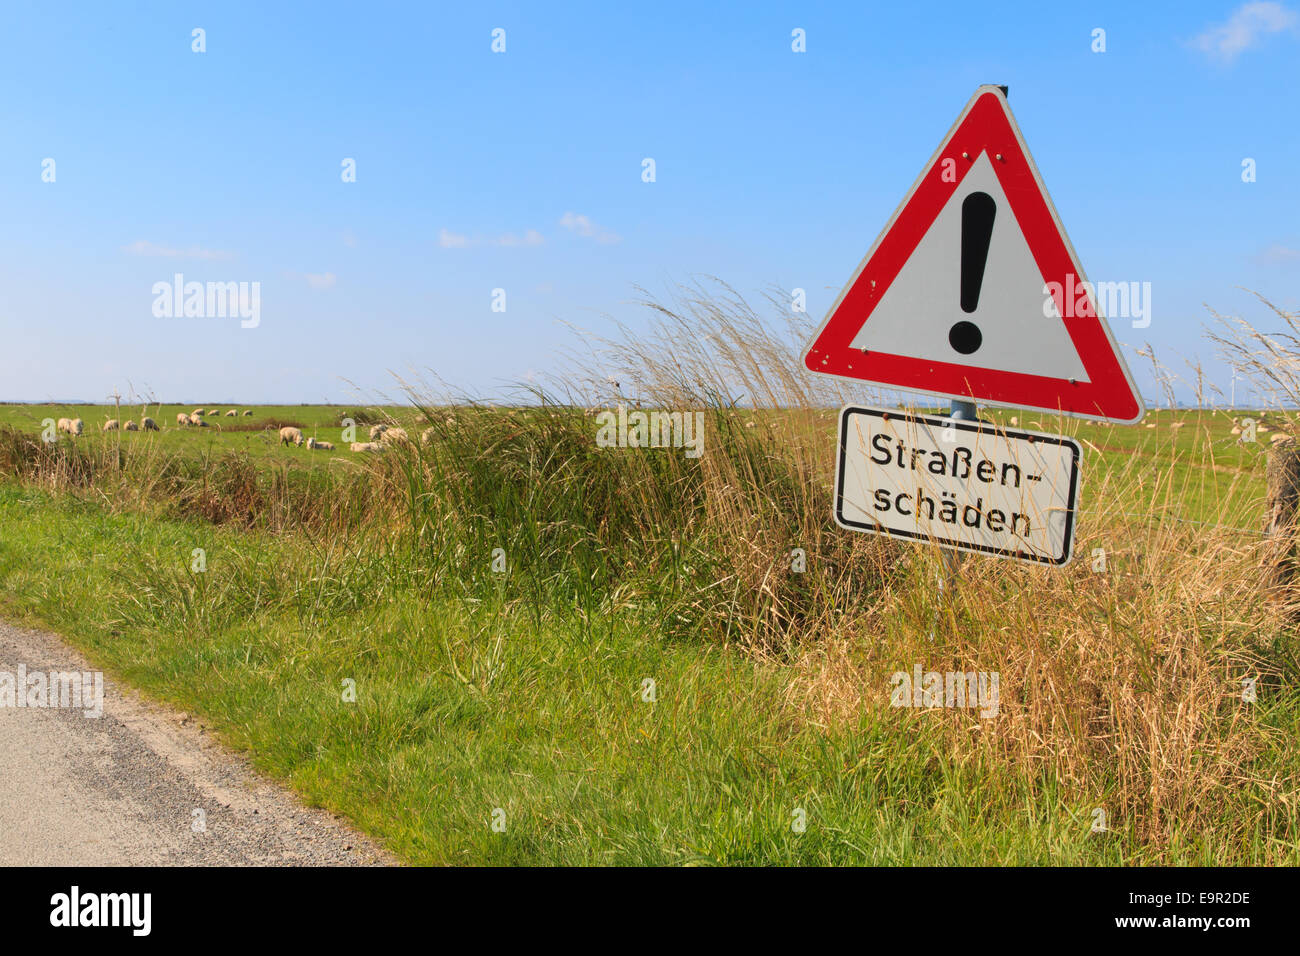 Señal de carretera alemana en el campo de las carreteras de advertencia Foto de stock